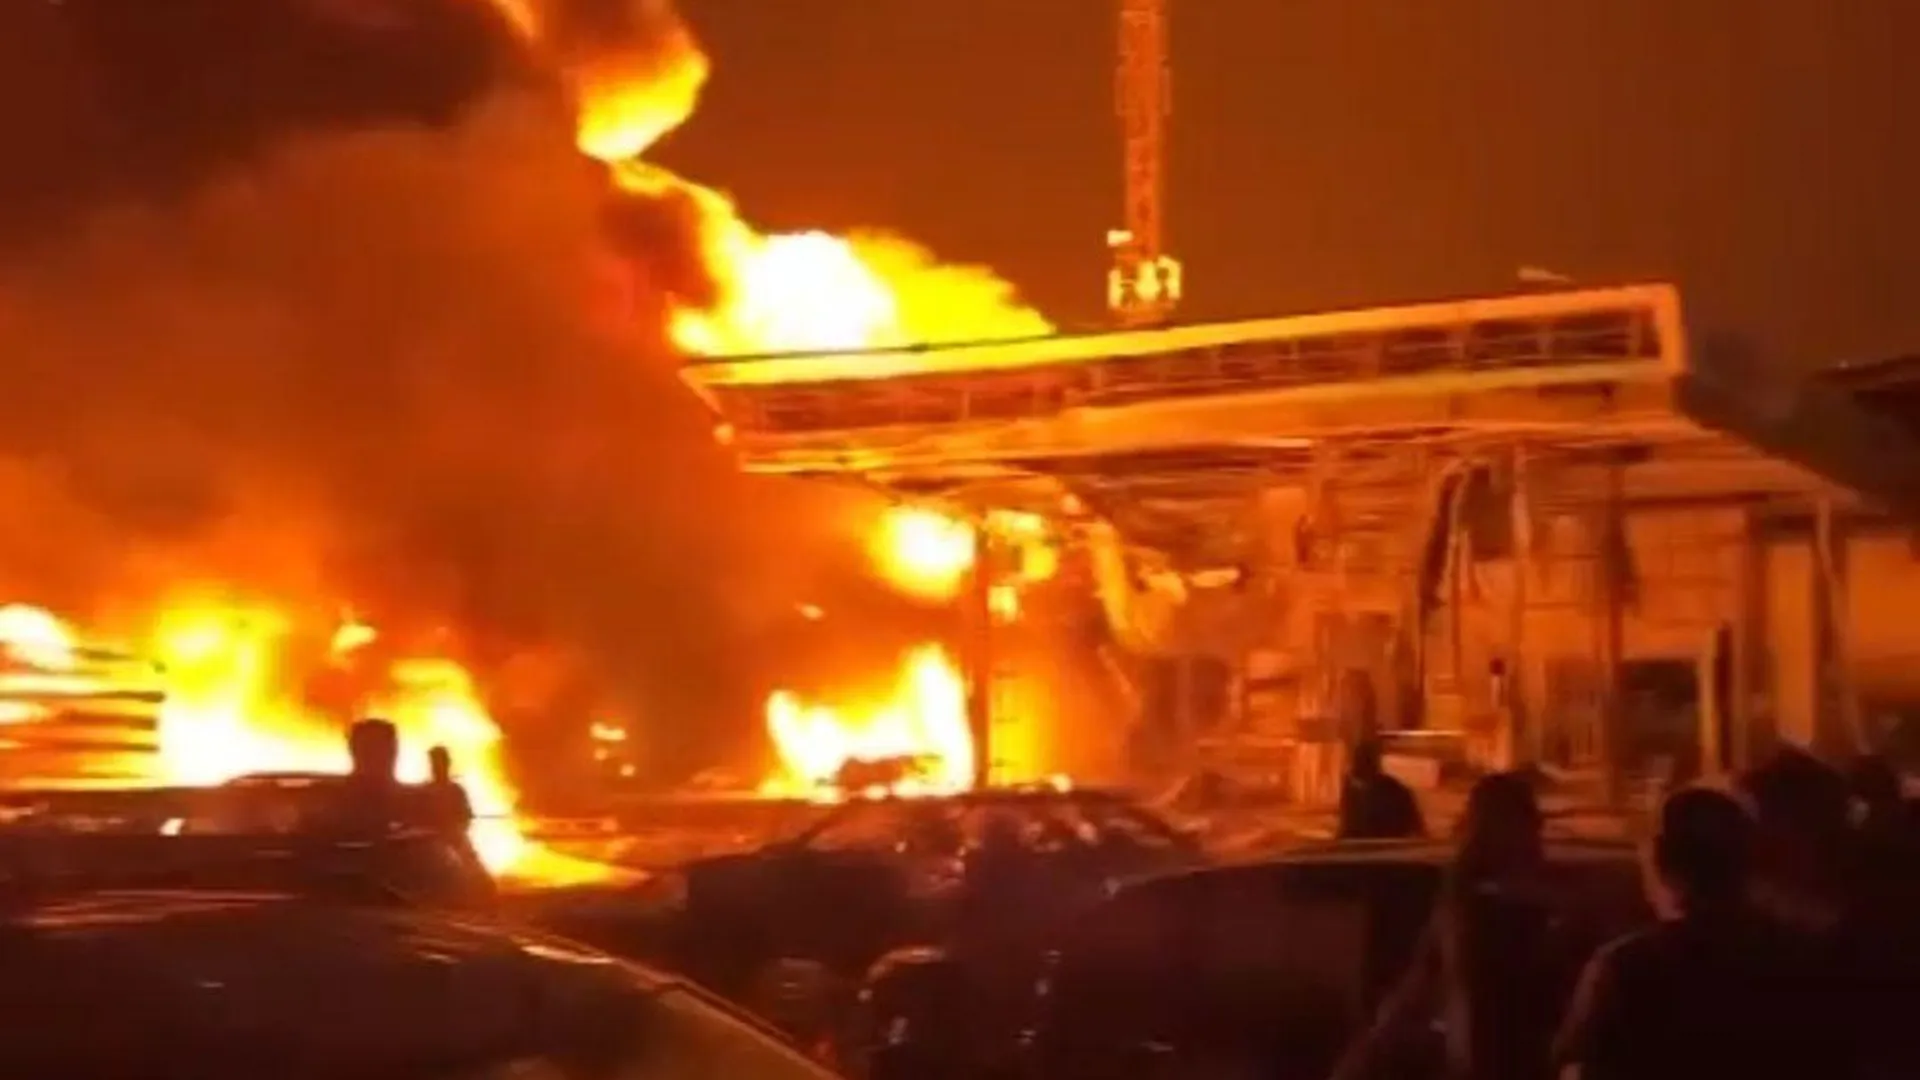 Последнее число жертв теракта. Пожар автомастерской в Махачкале Дагестан. Взрыв здания. Взрыв заправки в Махачкале 2023.